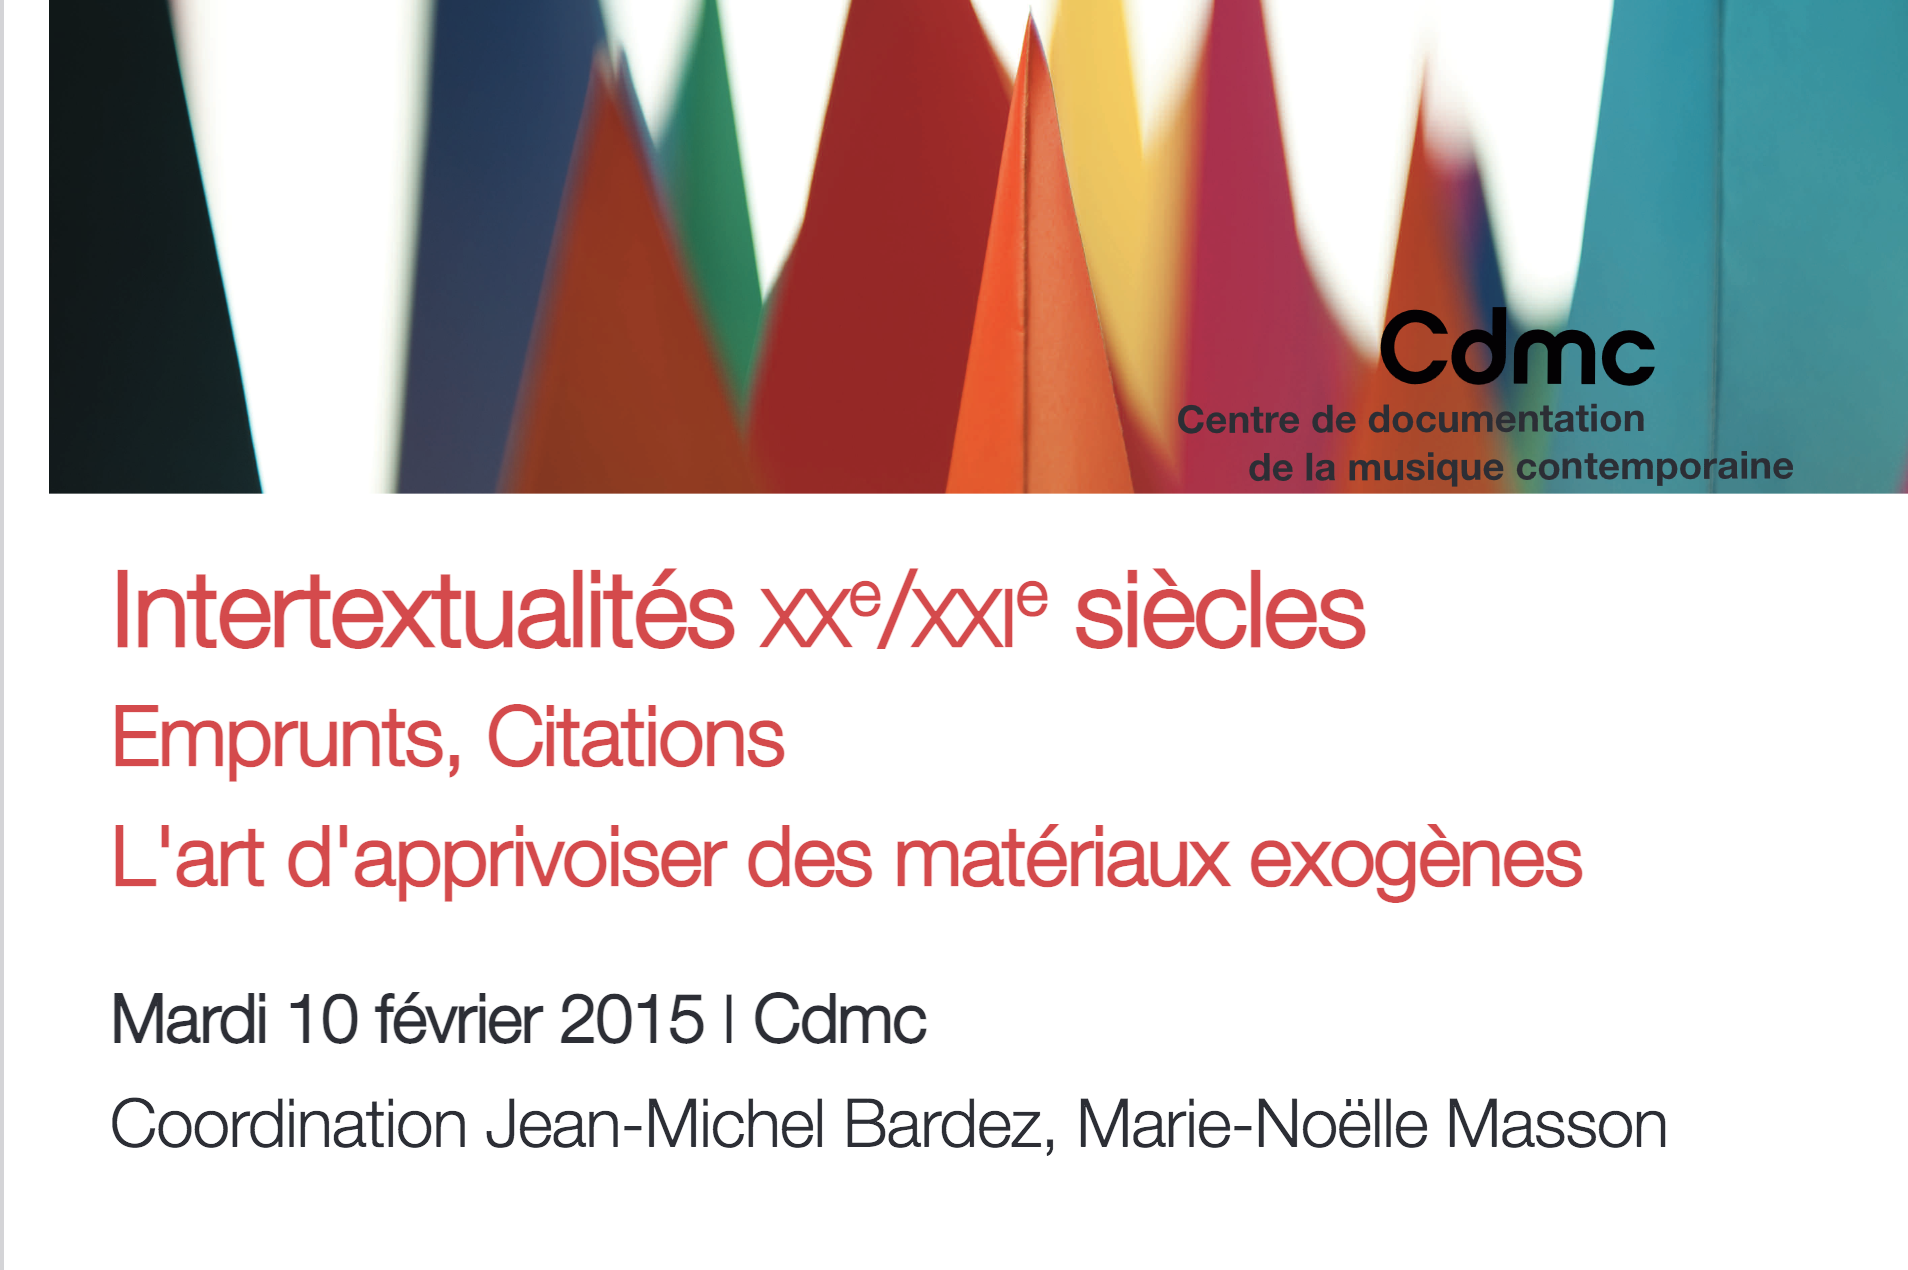 Lire la suite à propos de l’article Intertextualités au 20e siècle (Paris, Cdmc, 10/02/2015)